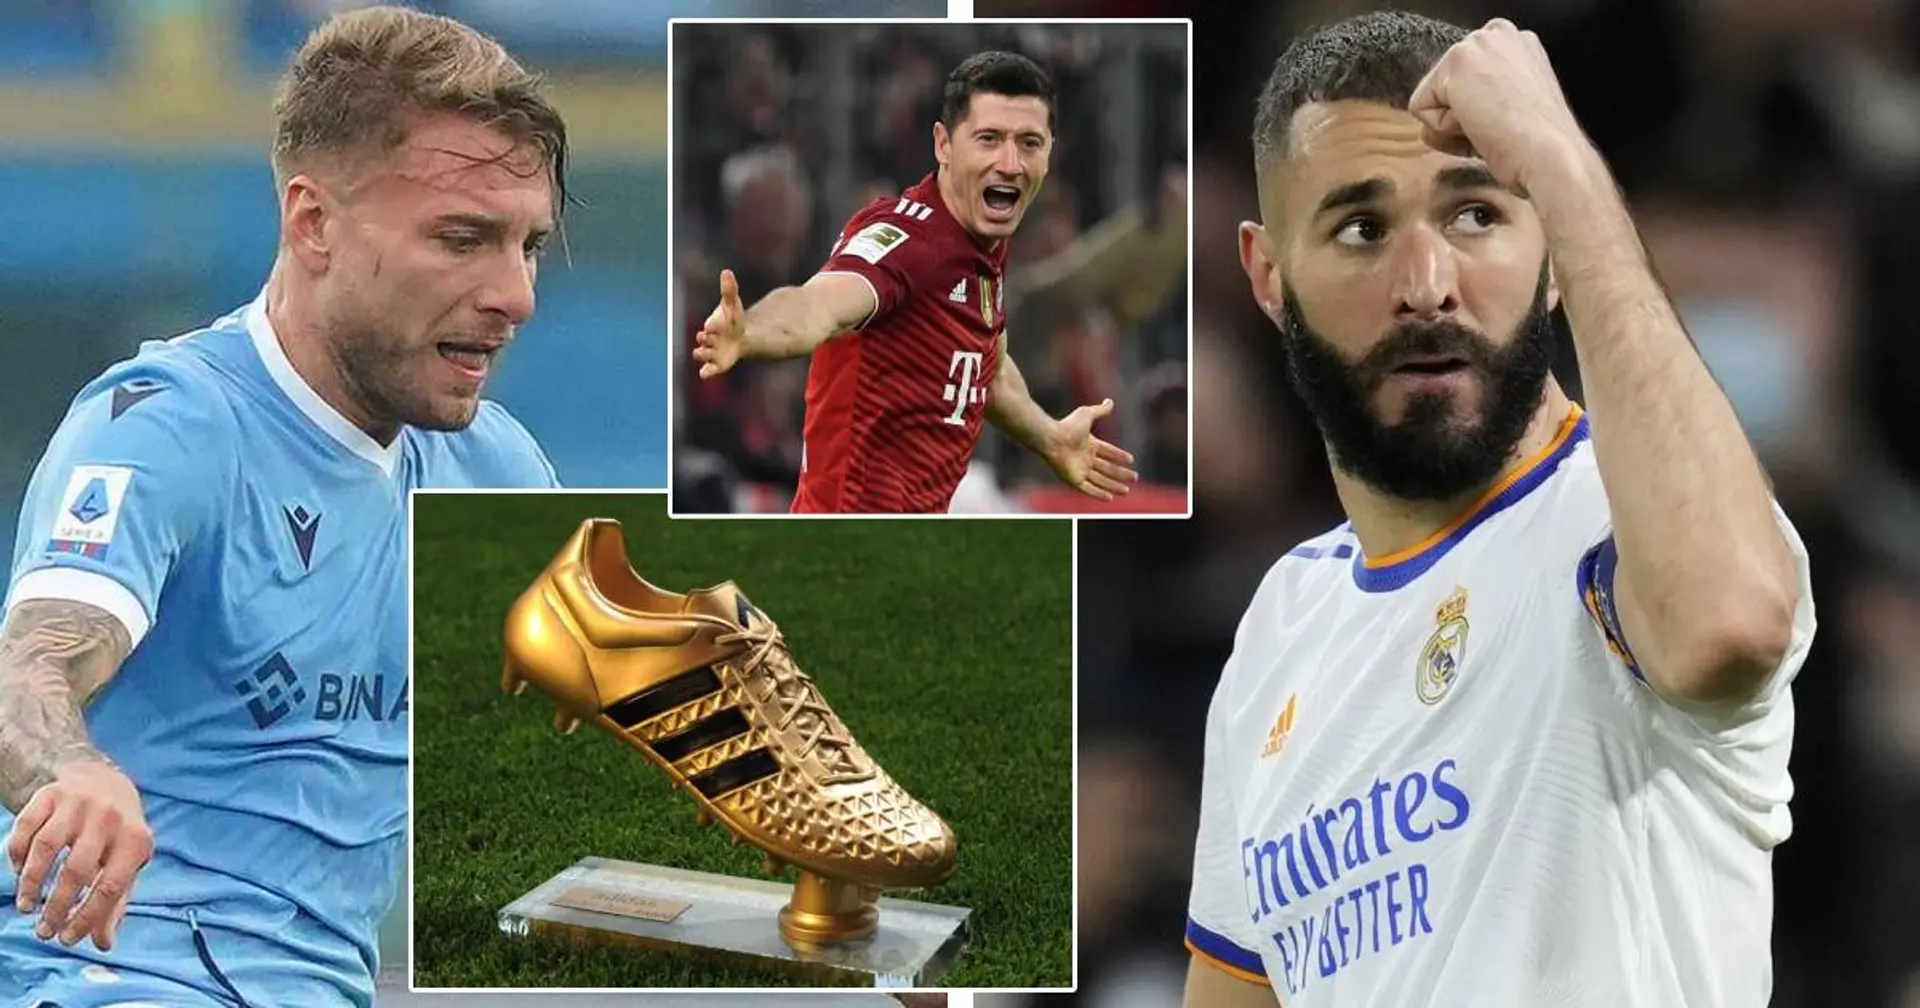 Goldener Schuh 2021/22: Lewandowski will Titel verteidigen, Benzema und Immobile nicht in der Top-5